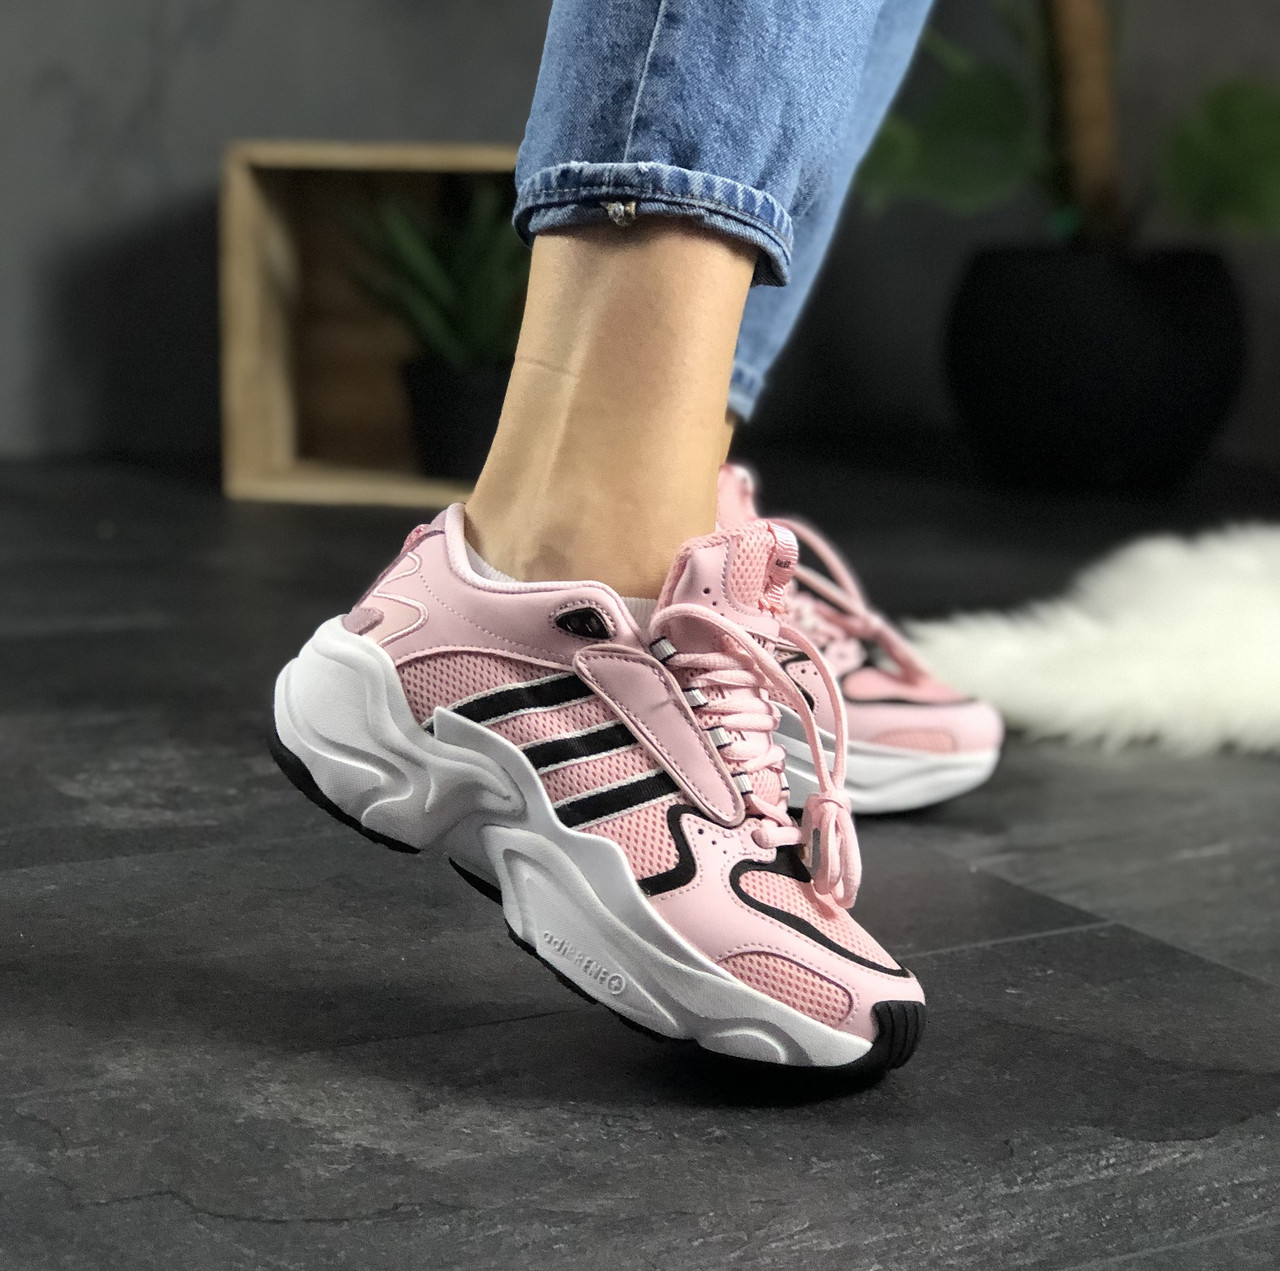 adidas magmur runner pink